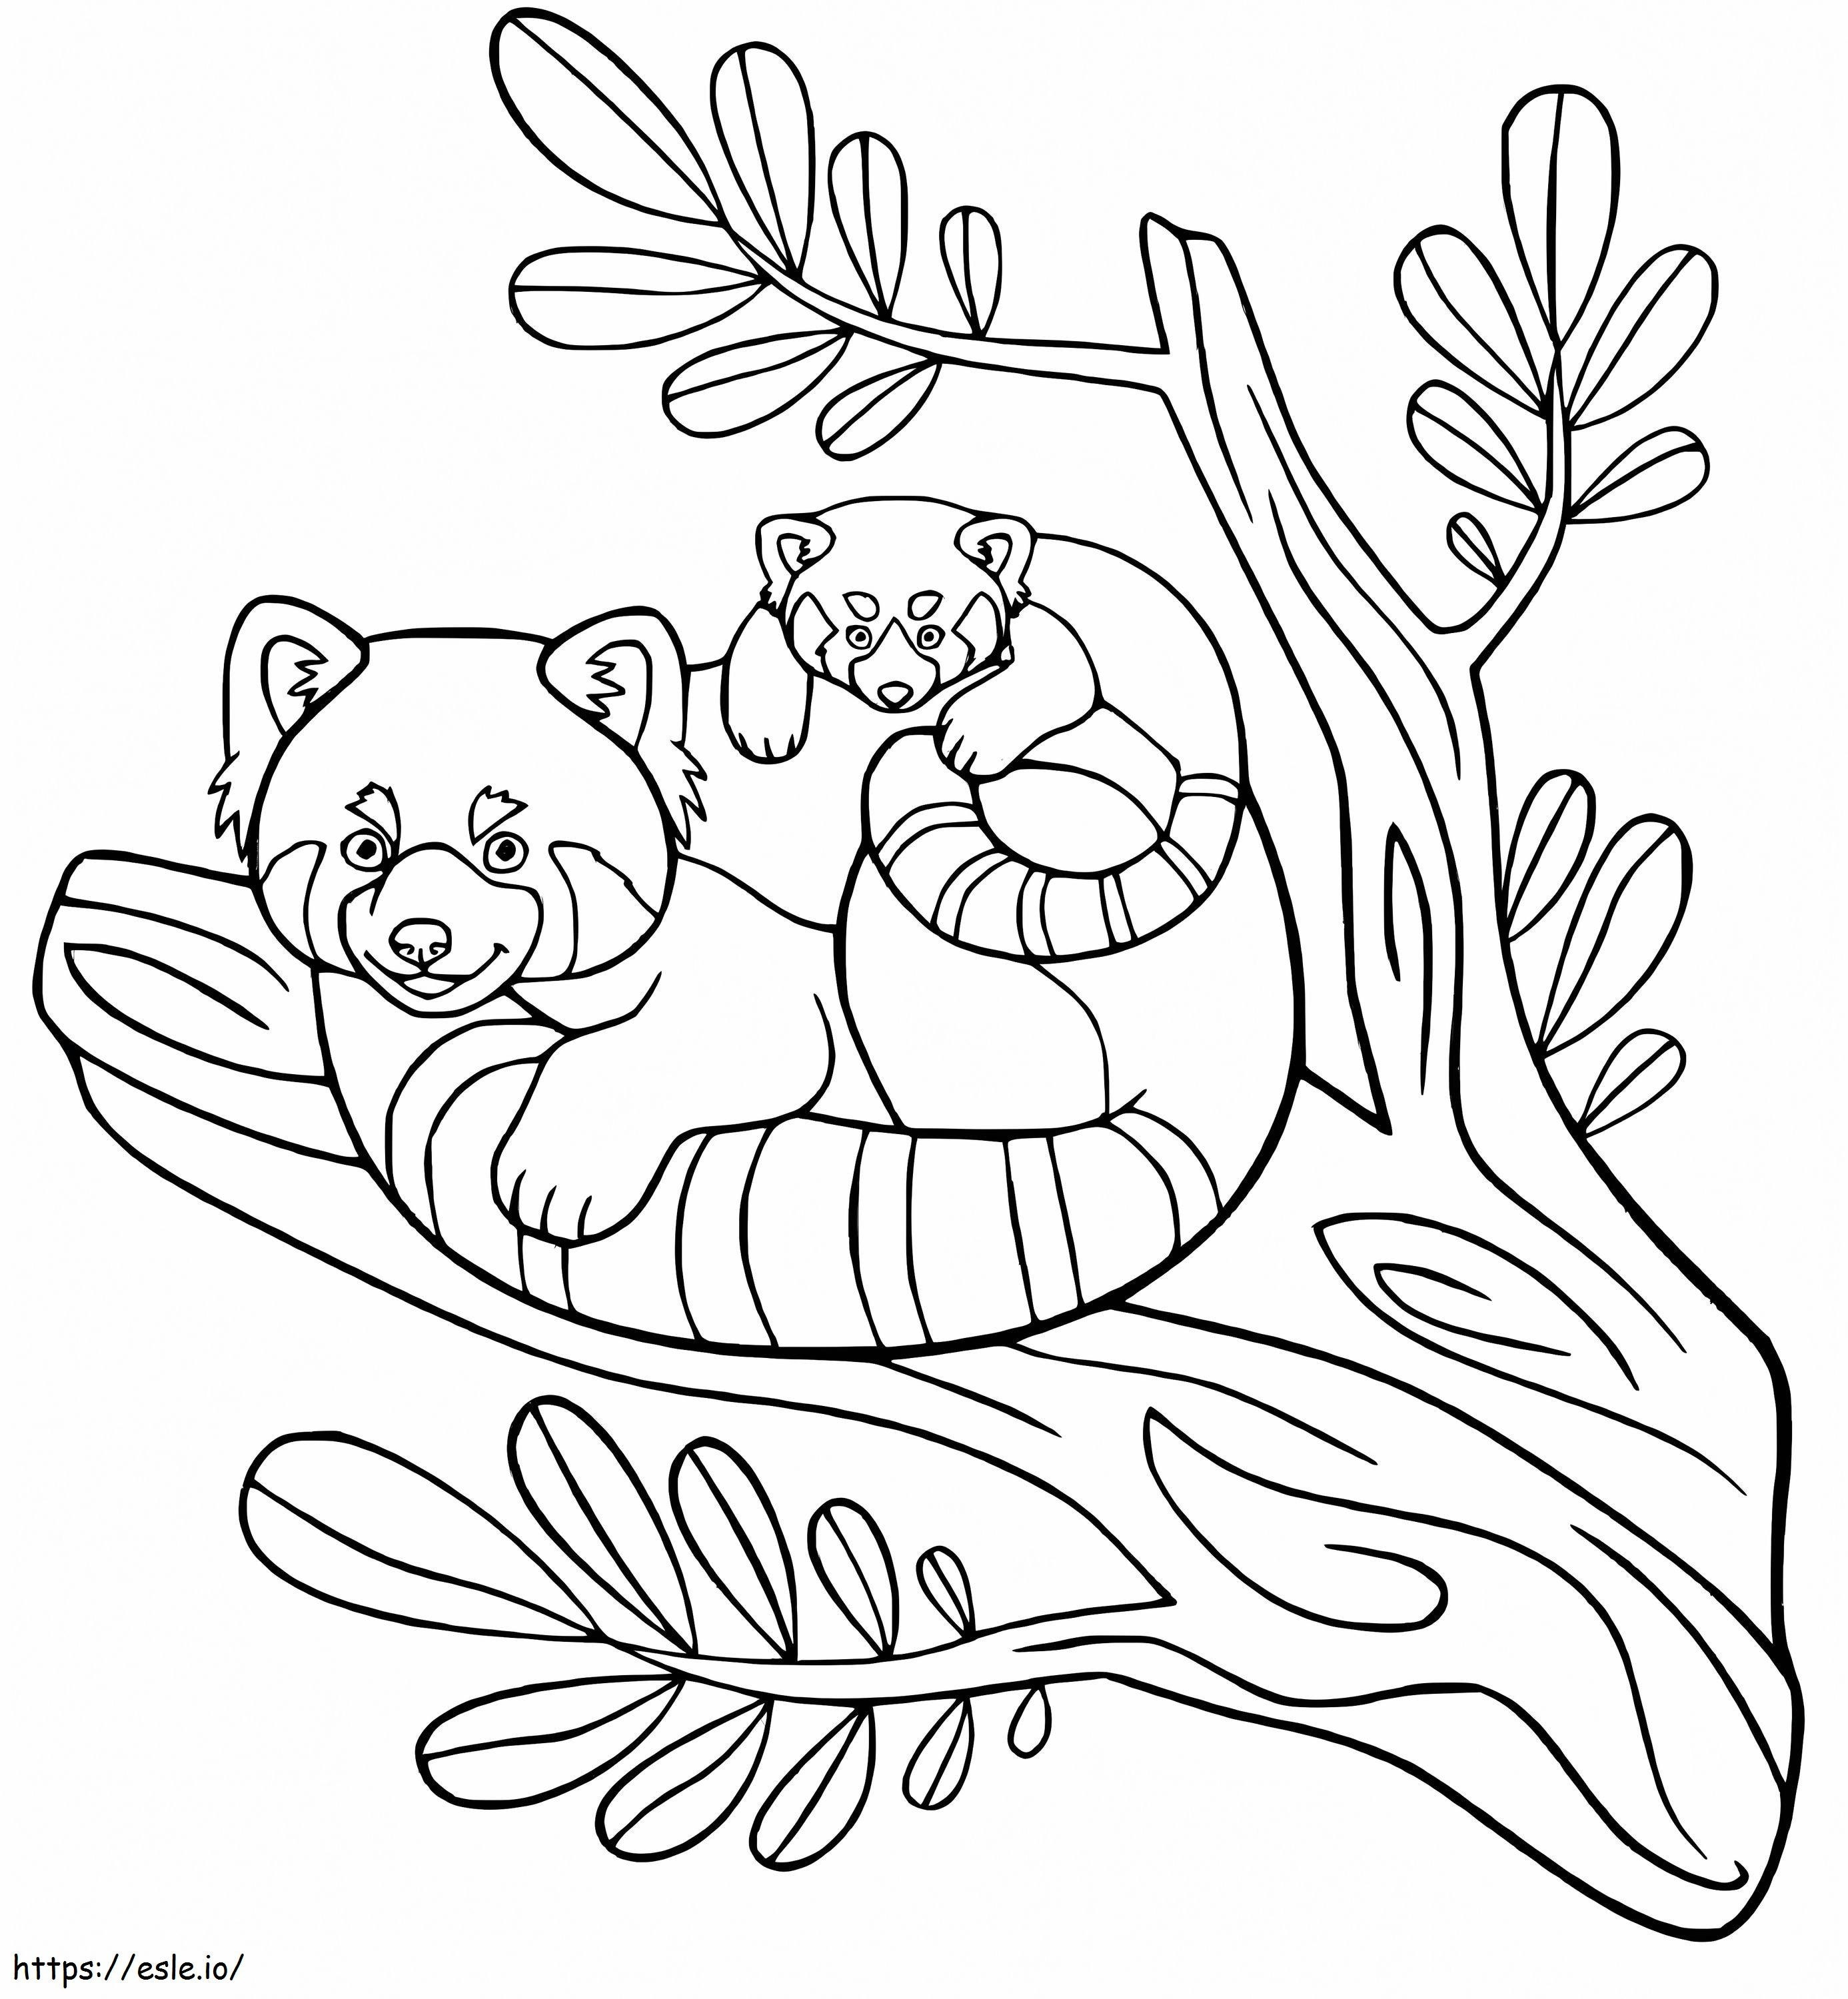 Mãe e bebê panda no galho de árvore para colorir